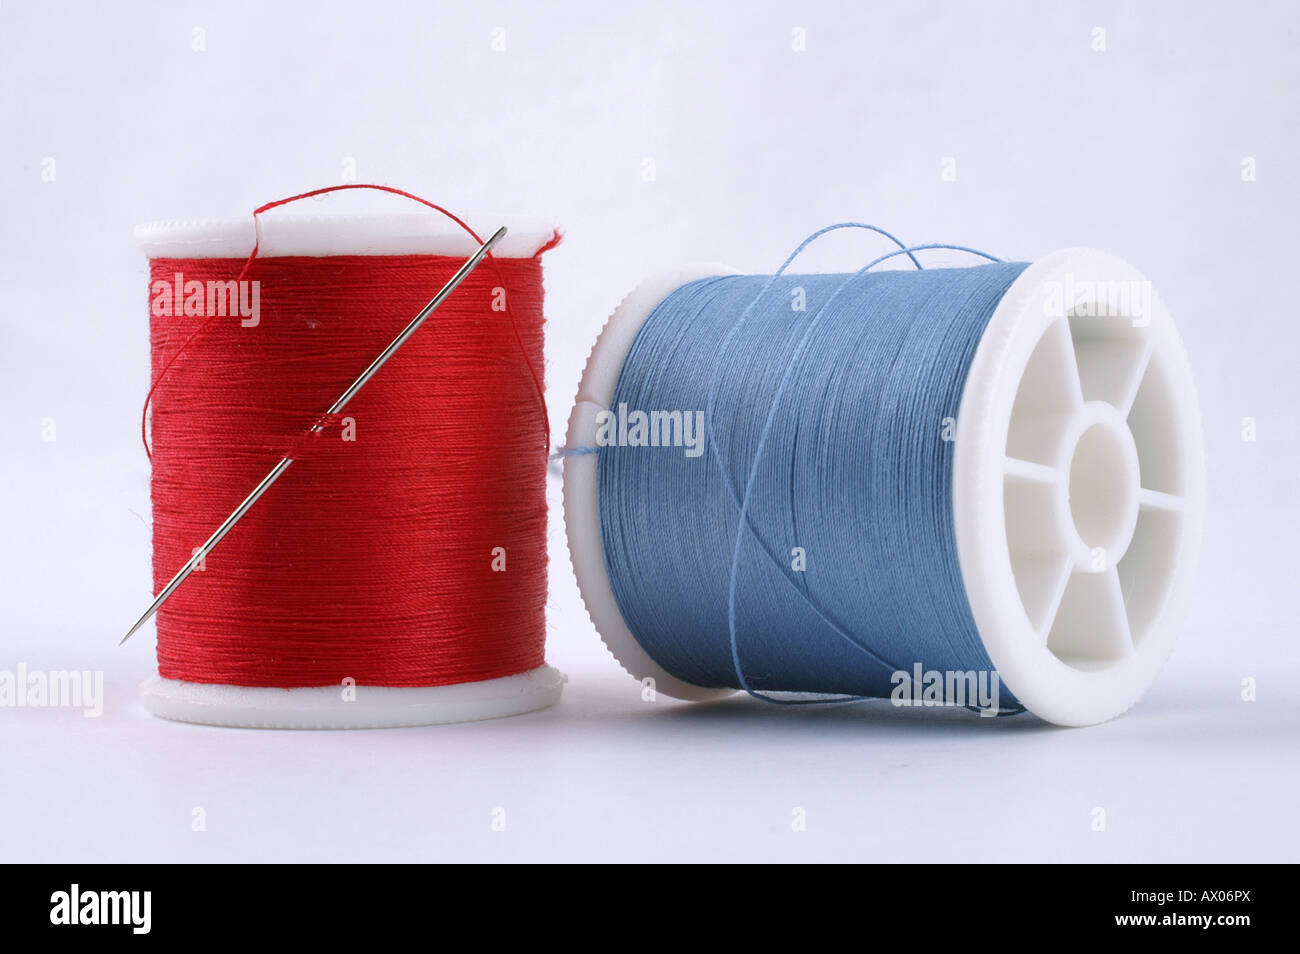 Bobines de coton coton artisanat en rouge une aiguille avec bleu / Nähgarn Garn Stopfgarn dans blau und rot mit Nadel Banque D'Images